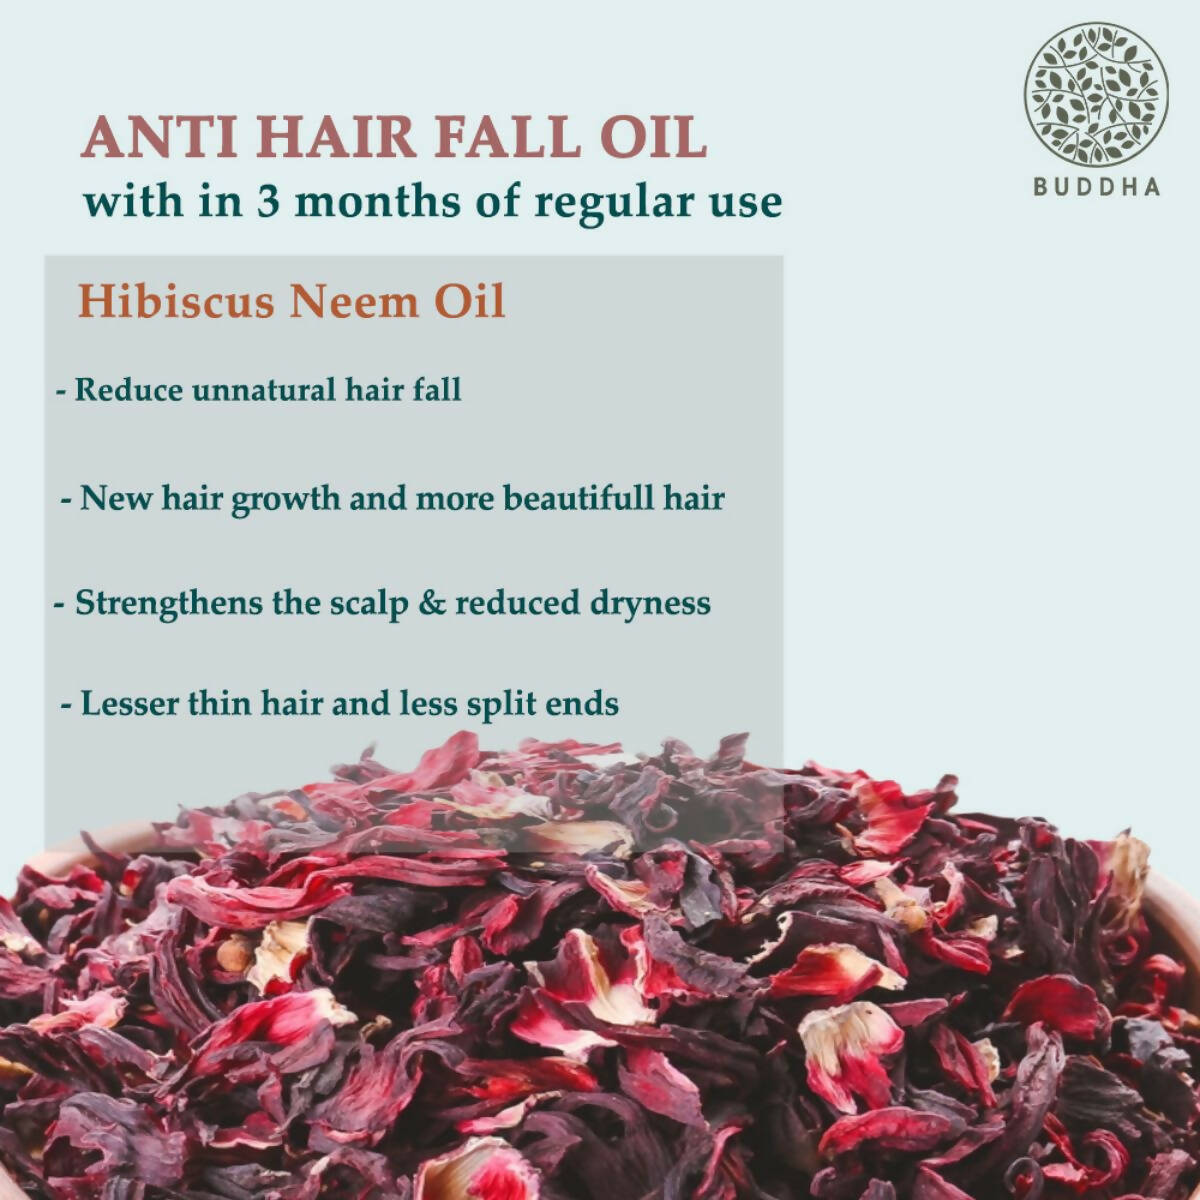 Buddha Natural Anti Hair Fall Hair Oil - For New Hair Growth And Stop Hair Fall - Distacart